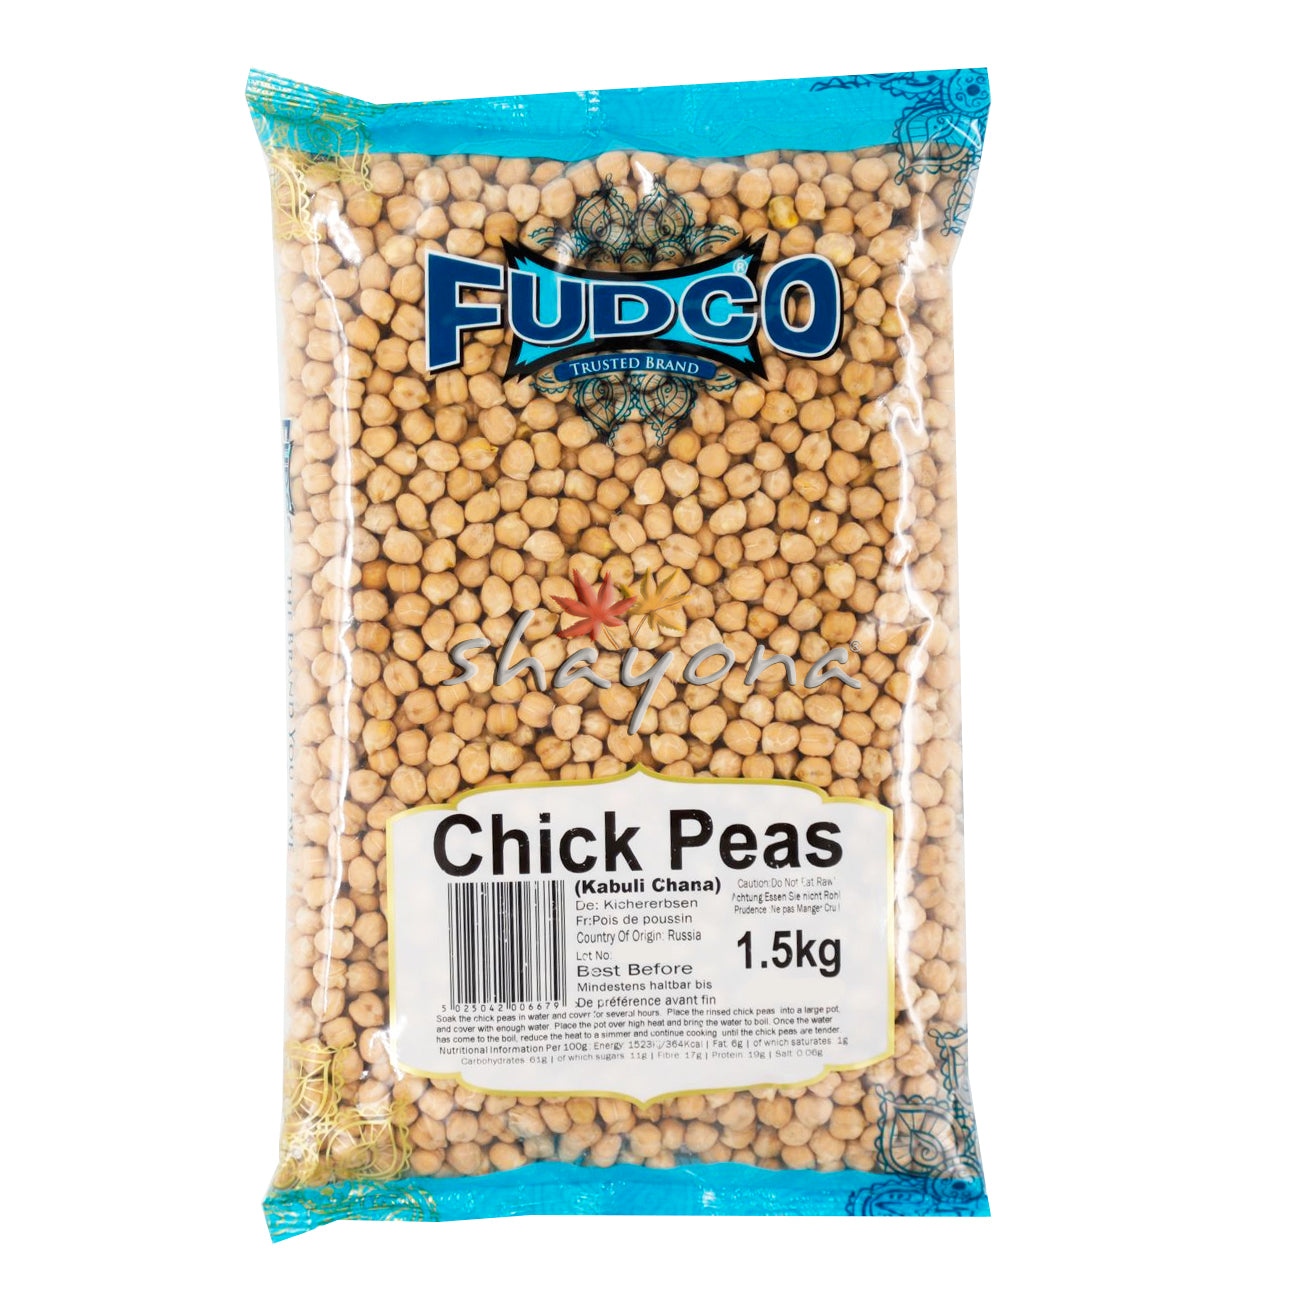 Fudco Chick Peas